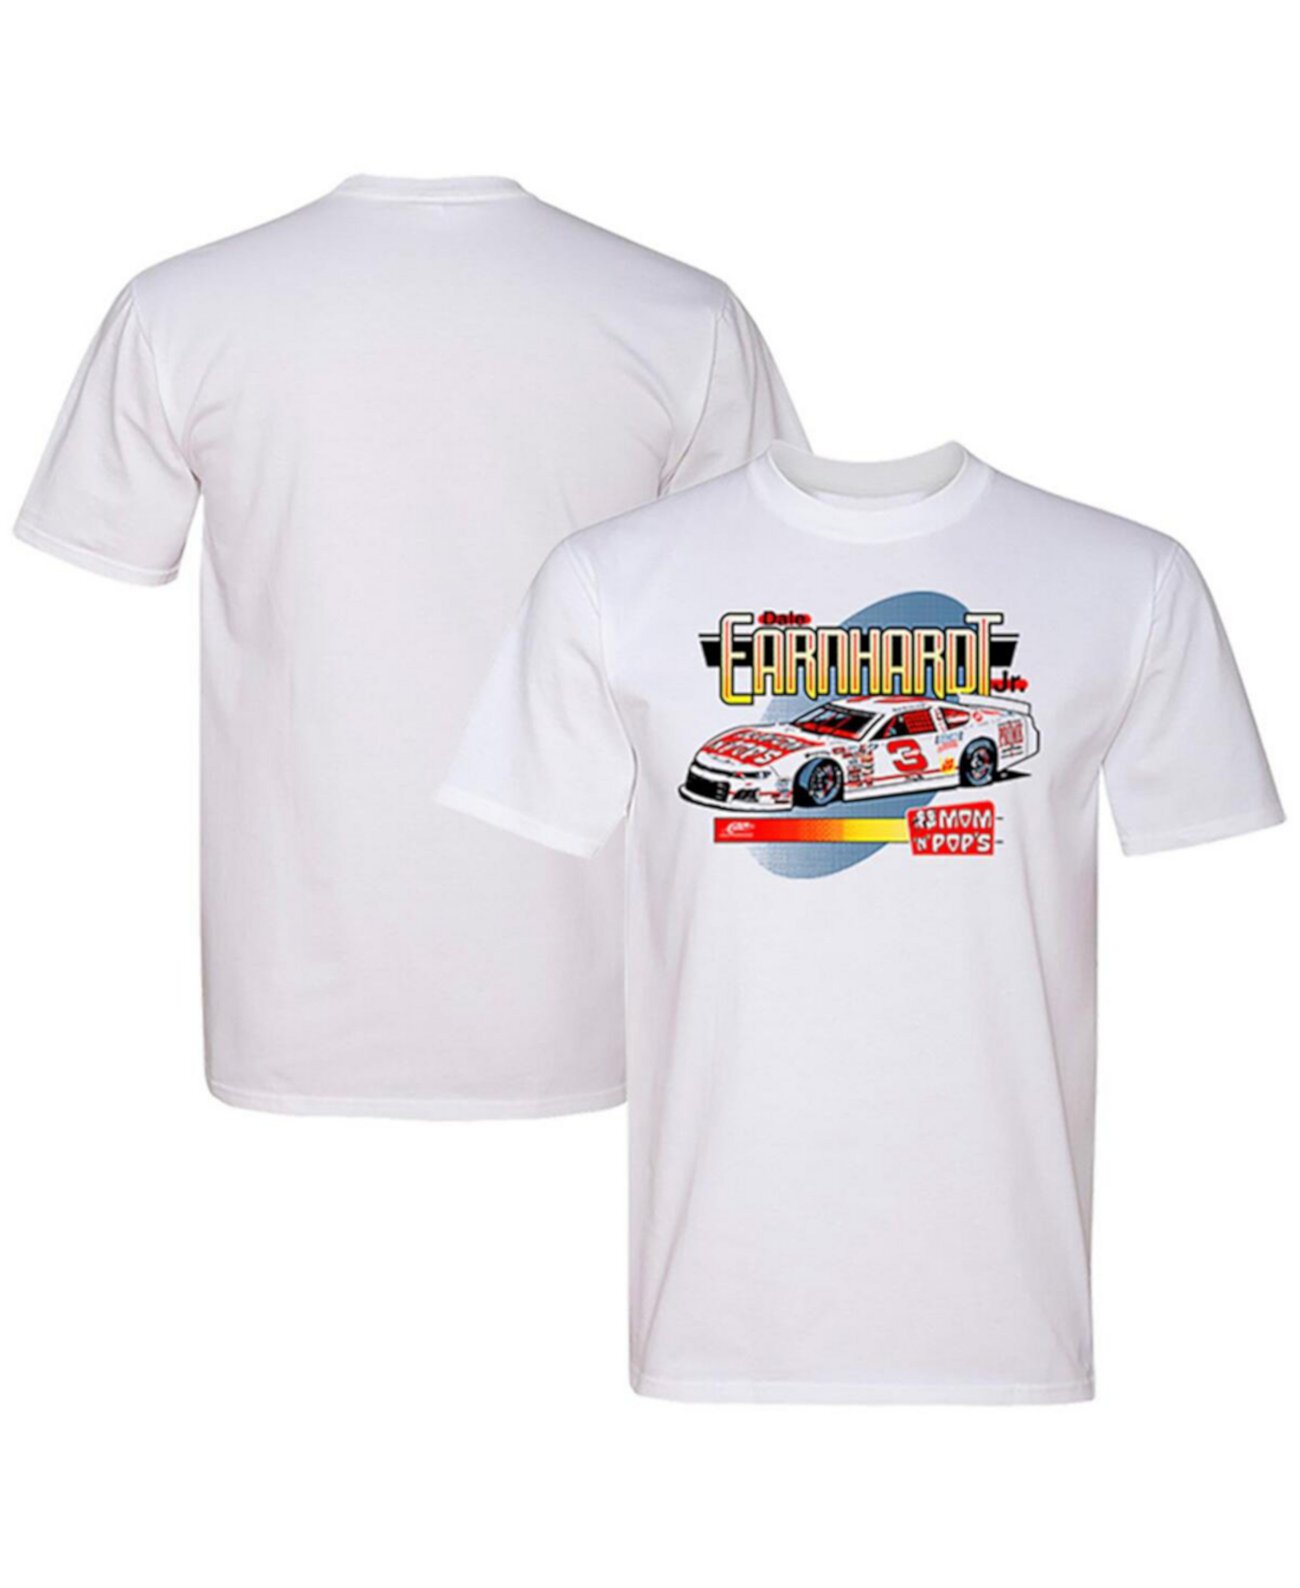 Мужская белая футболка Dale Earnhardt Jr. Tire Pros Mom N' Pops Car JR Motorsports Official Team Apparel